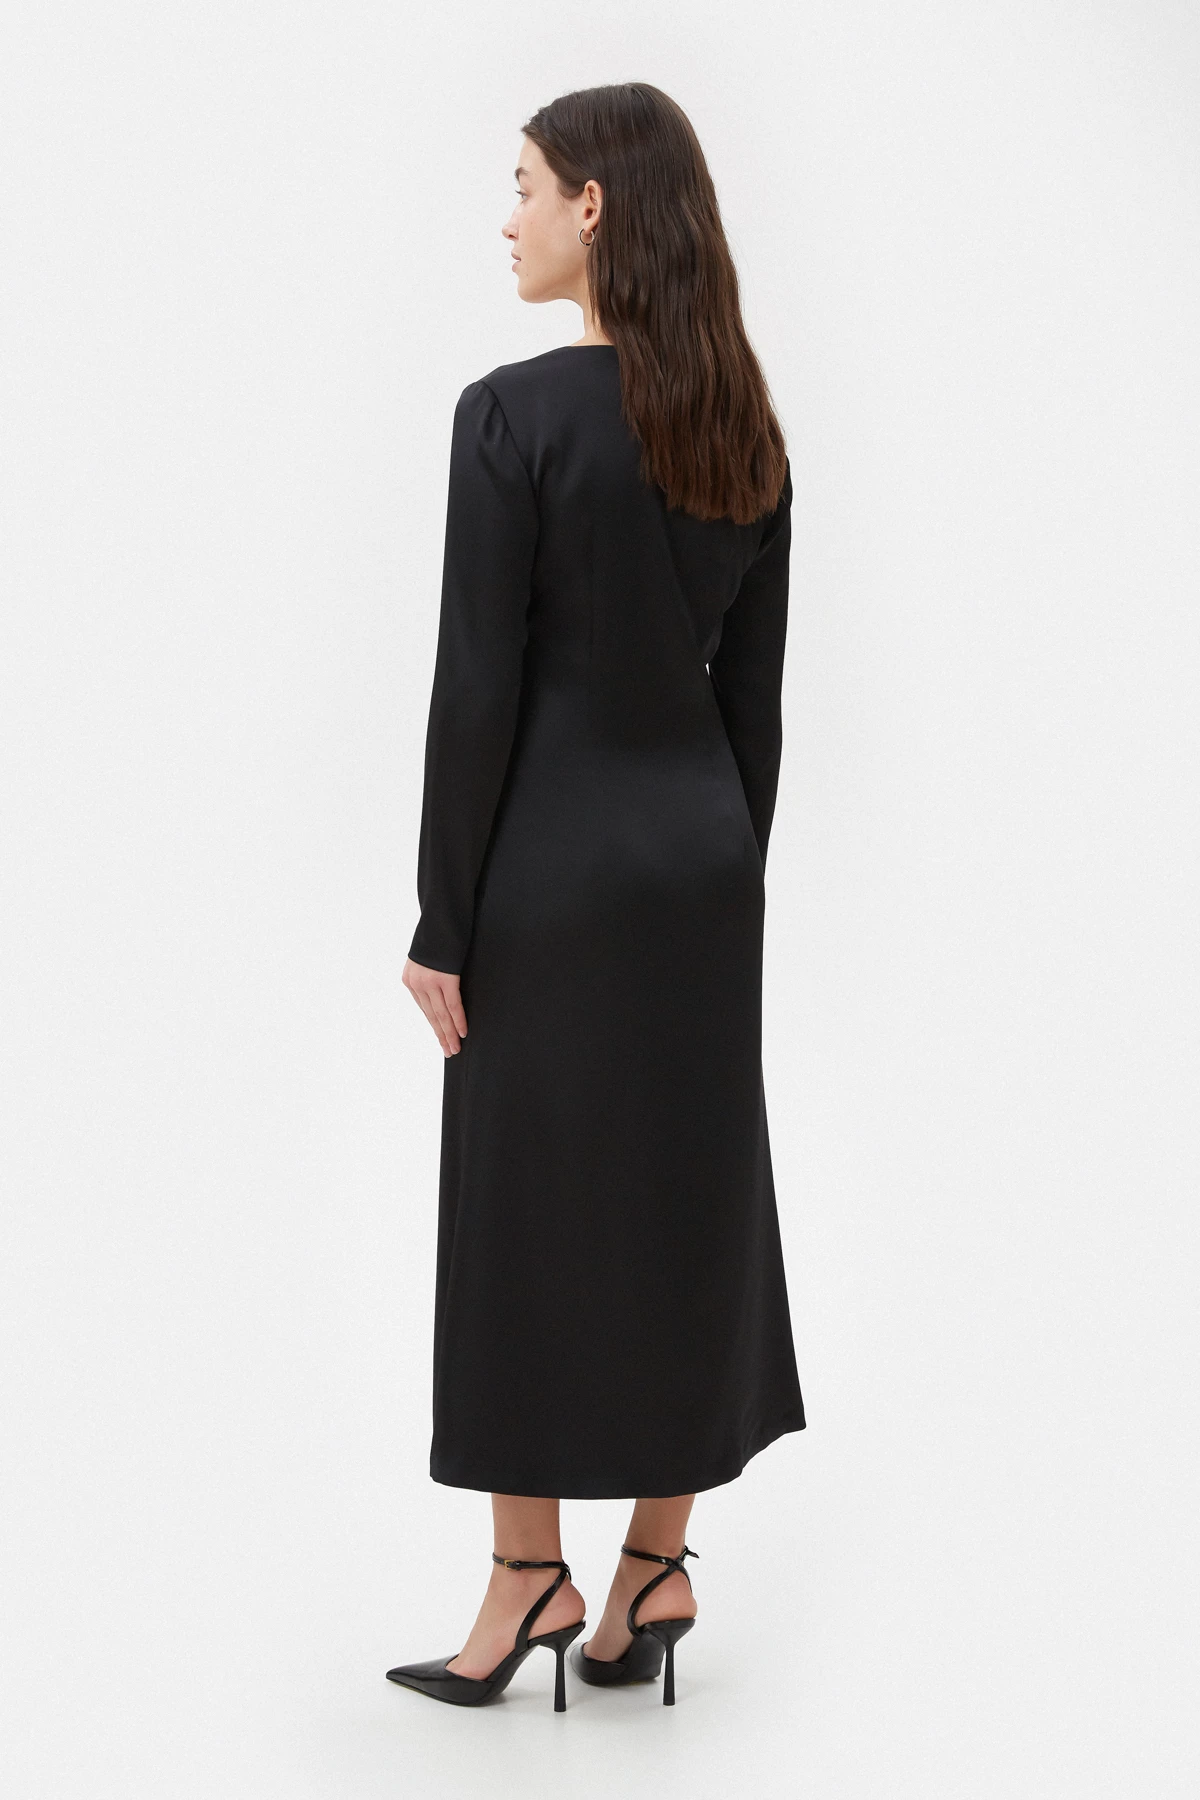 Black satin midi dress with a V-neckline, photo 5